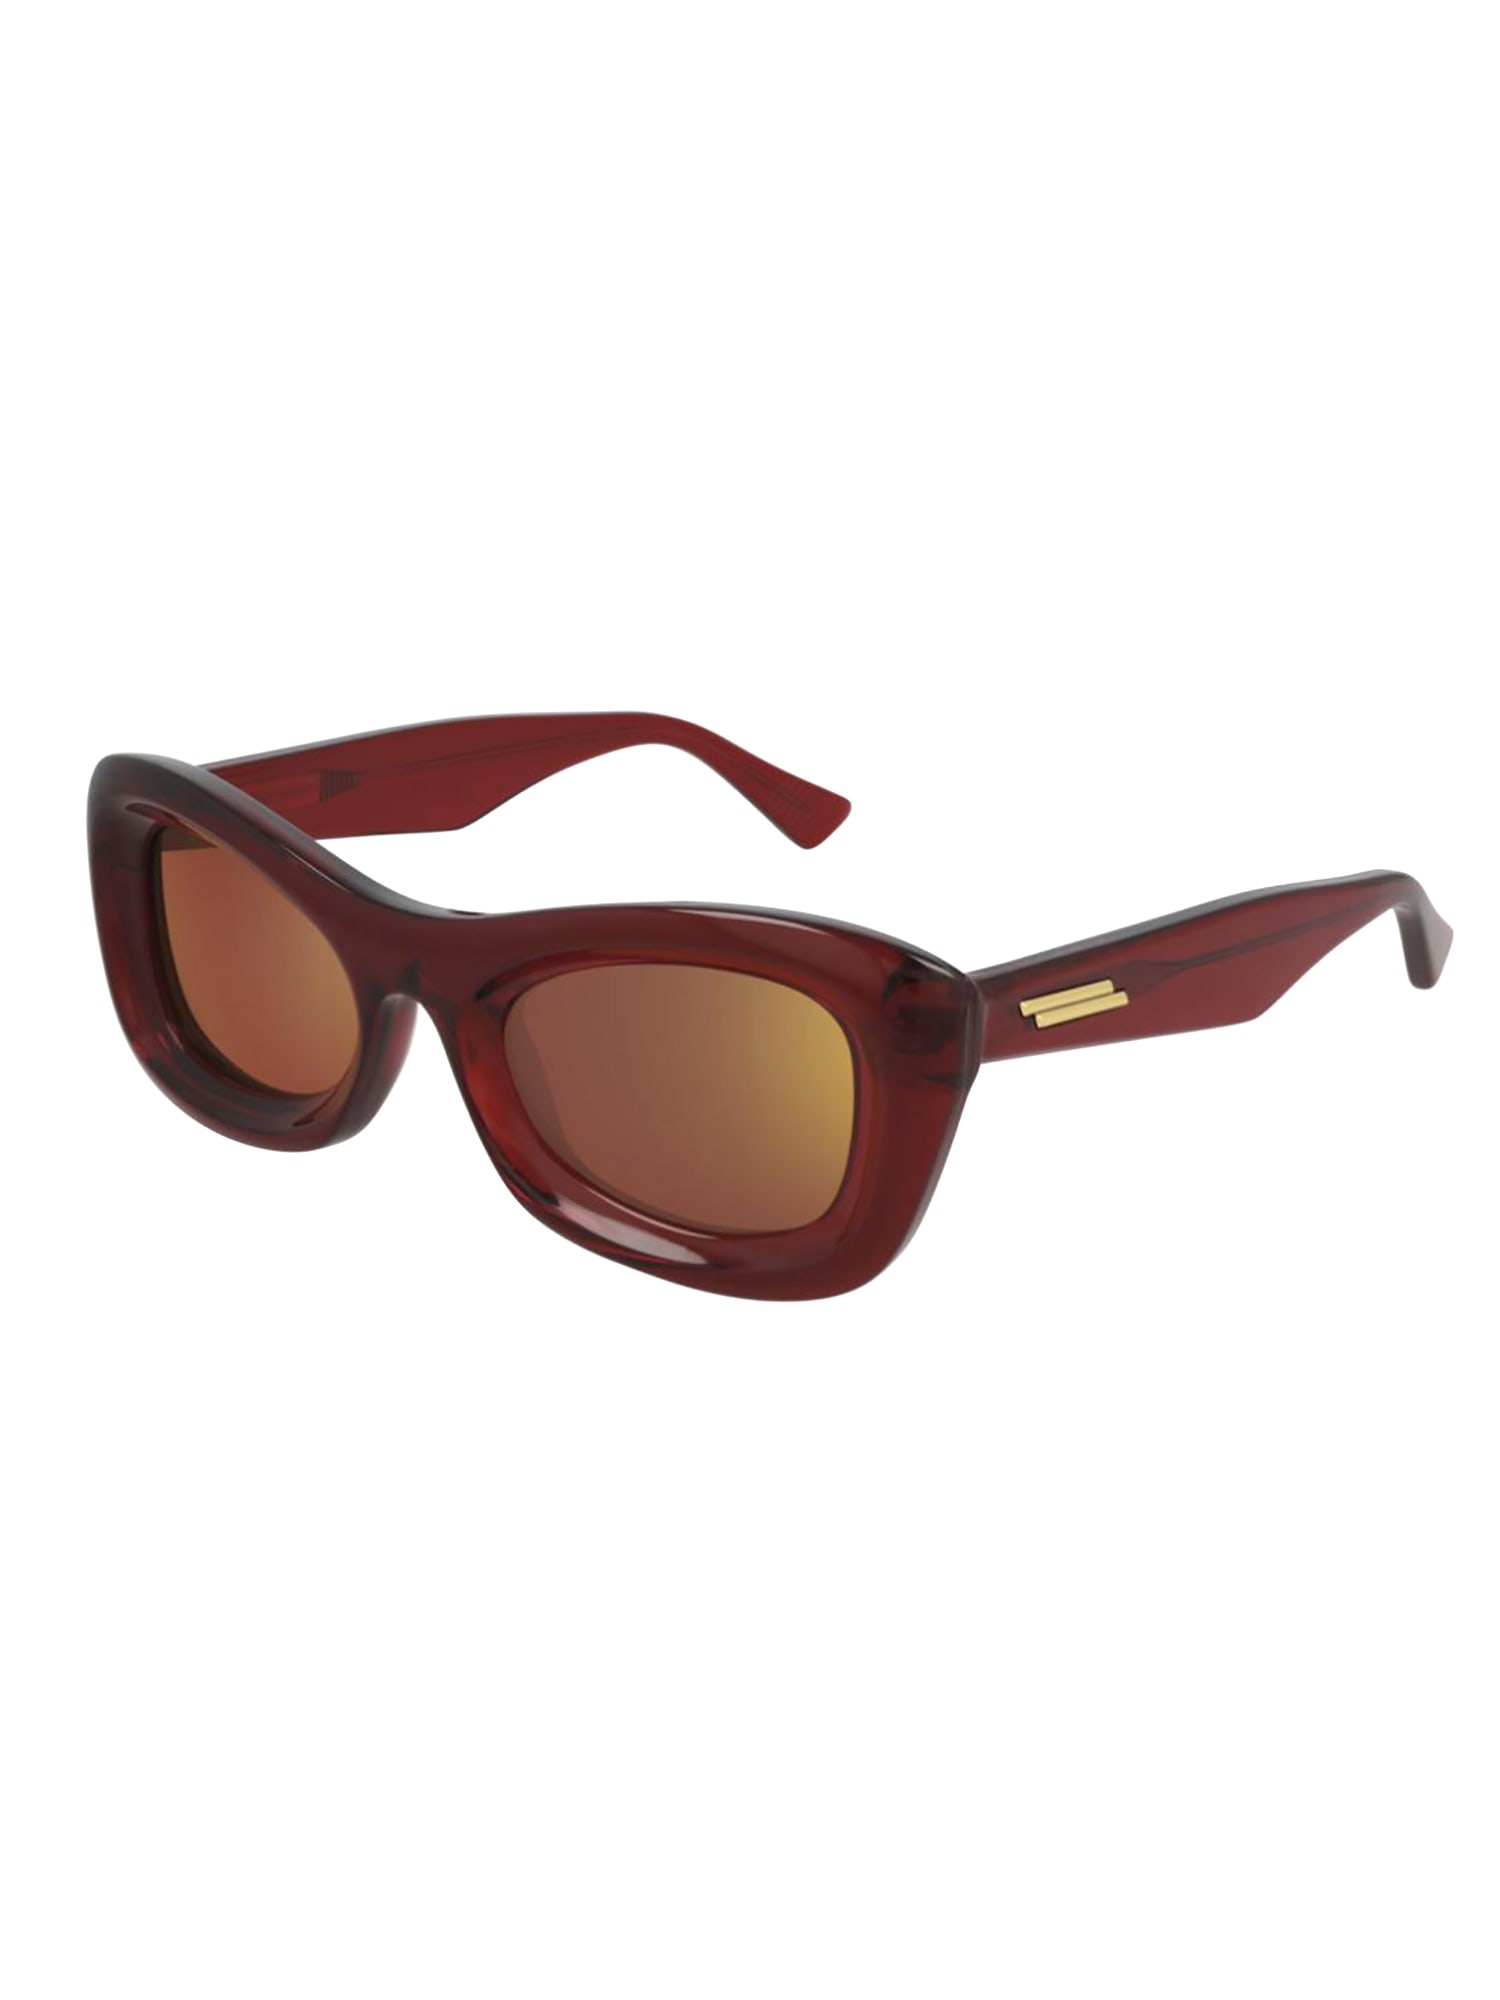 Bottega Veneta bv1088s sunglasses